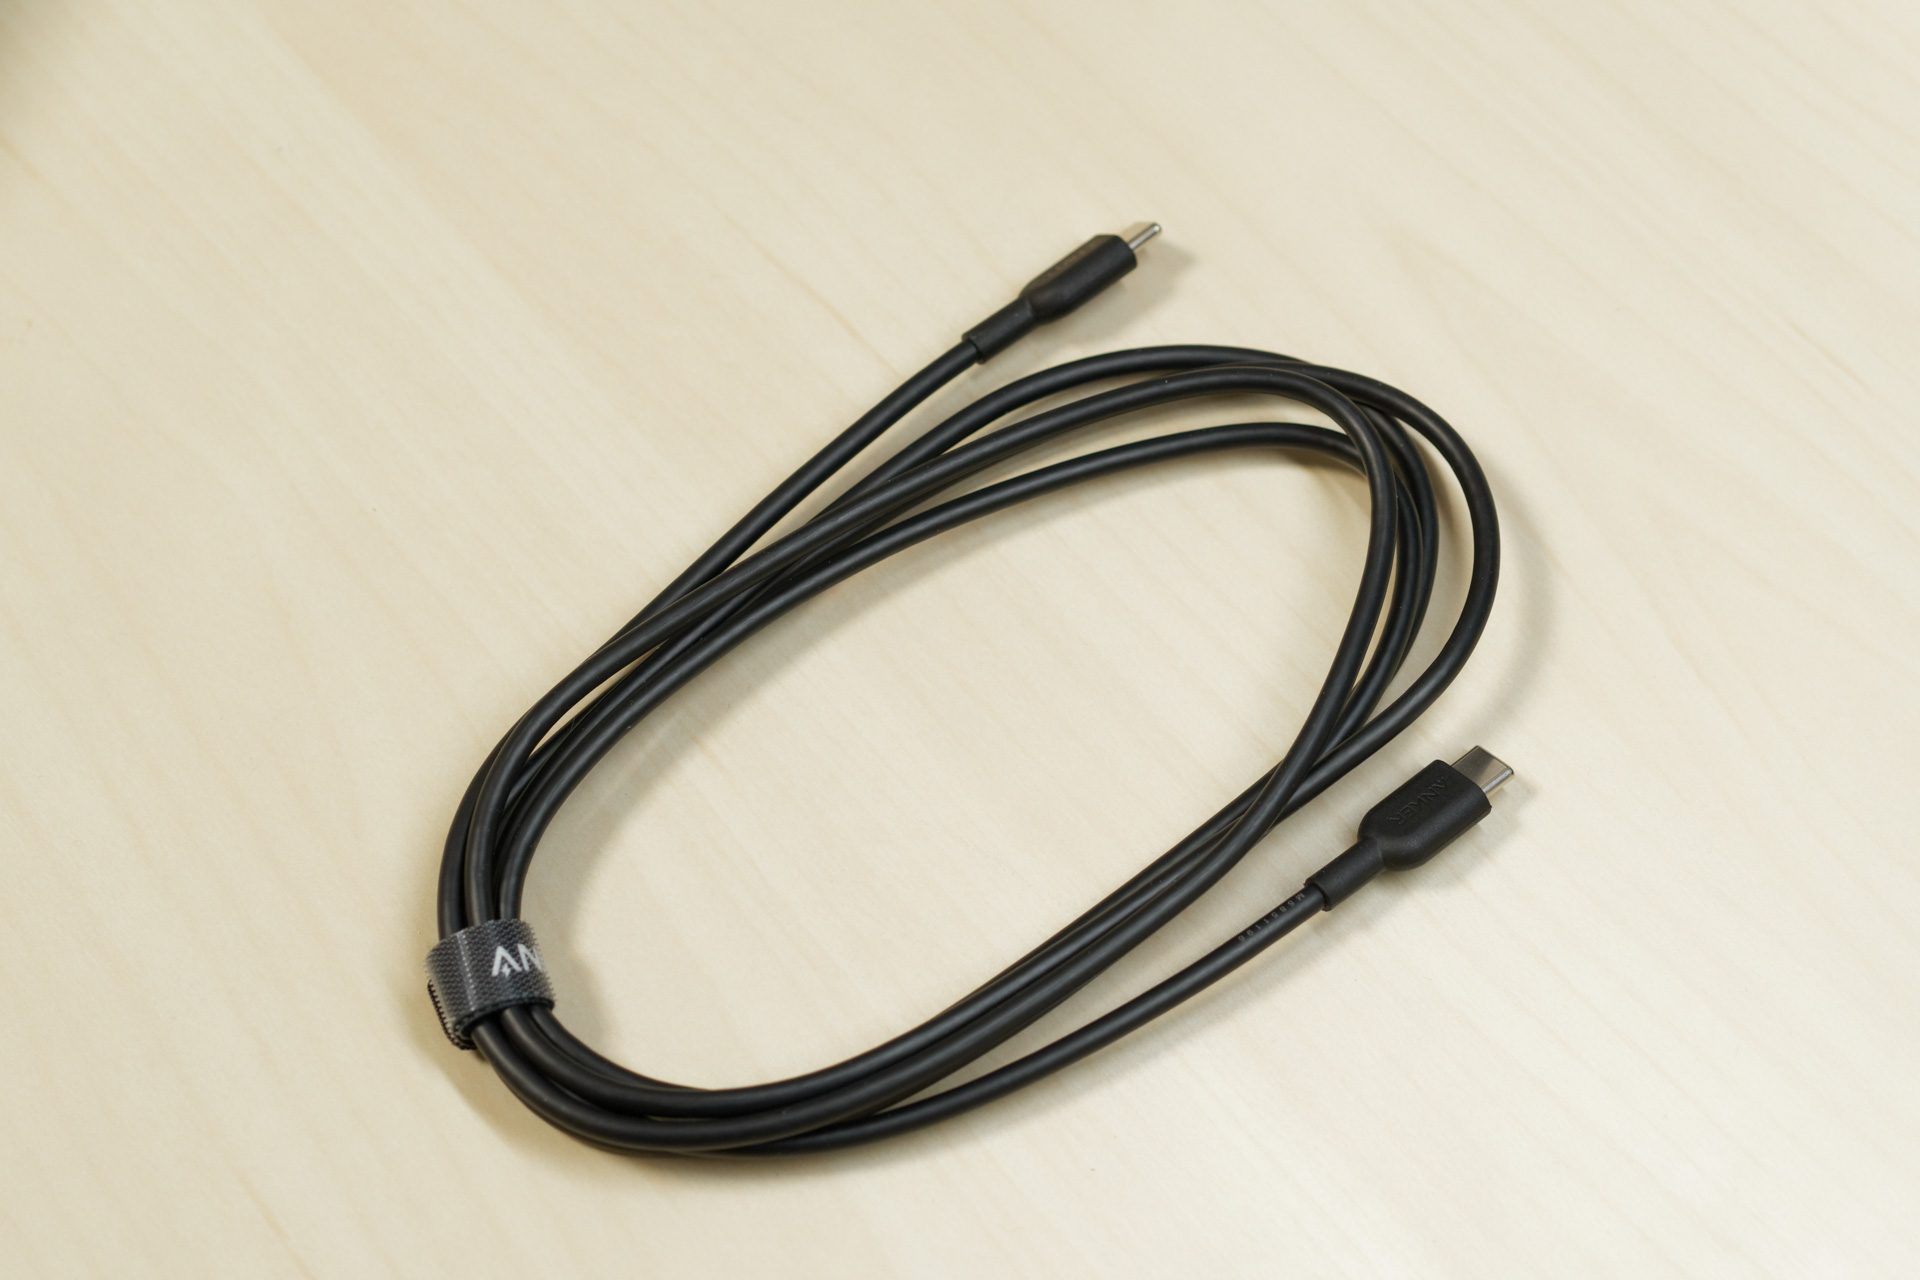 894円 品質一番の Anker PowerLine III USB-C 2.0 ケーブル 1.8m ホワイト 超高耐久 60W